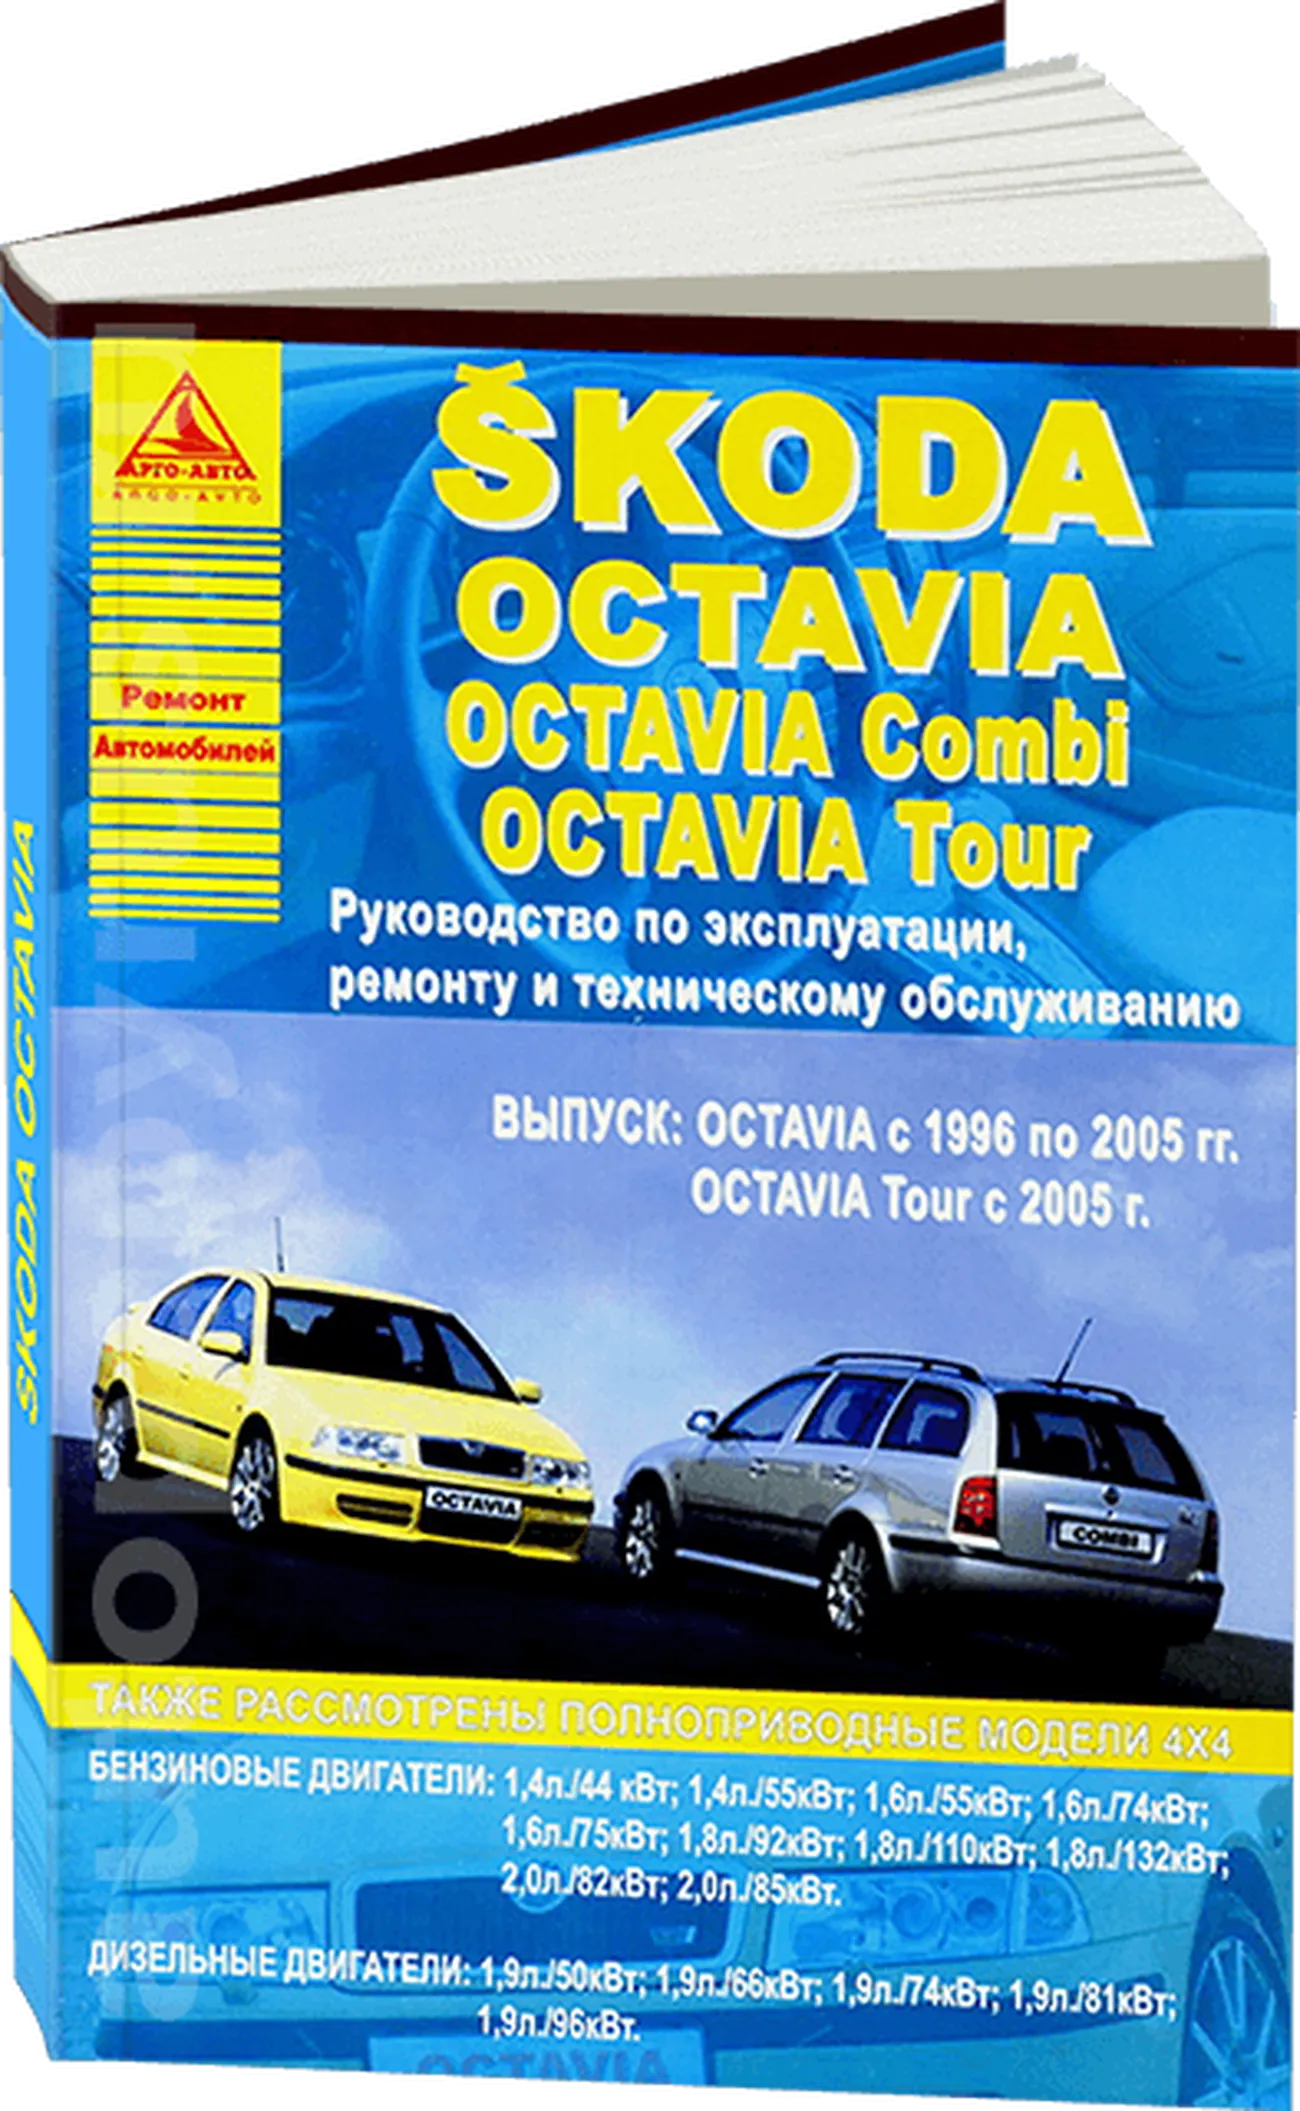 Книга: SKODA OCTAVIA / OCTAVIA TOUR / OCTAVIA COMBI (б , д) 1996-2005 и с 2005 г.в., рем., экспл., то | Арго-Авто